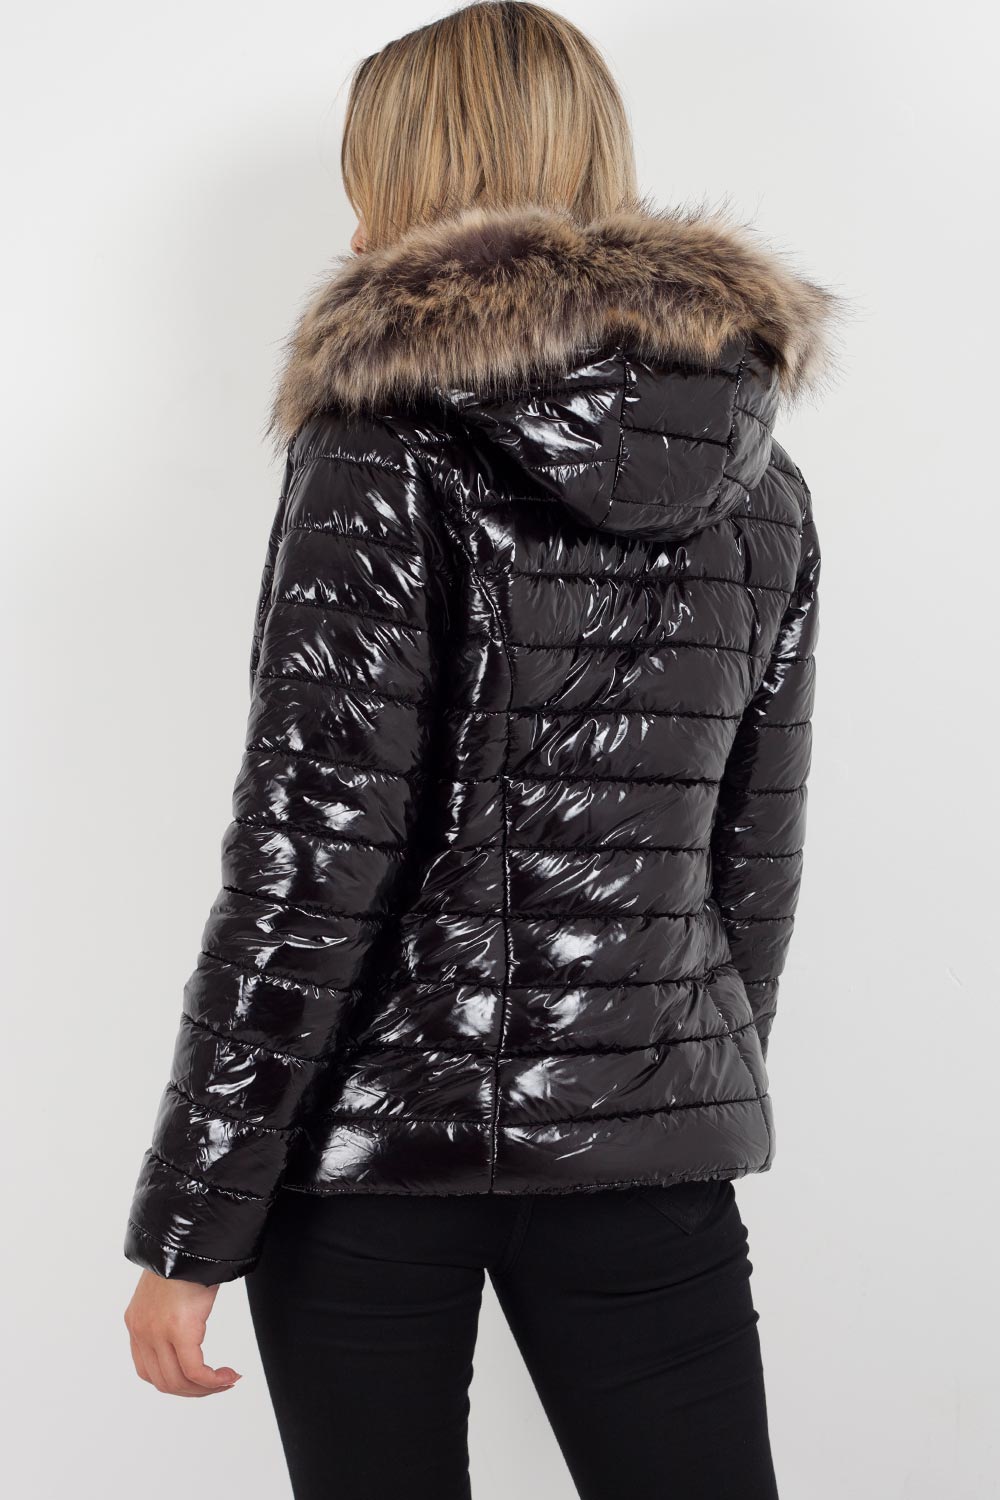 Wet Look Puffer Coat With Faux Fur Hood – | Wet Look Winter Coat